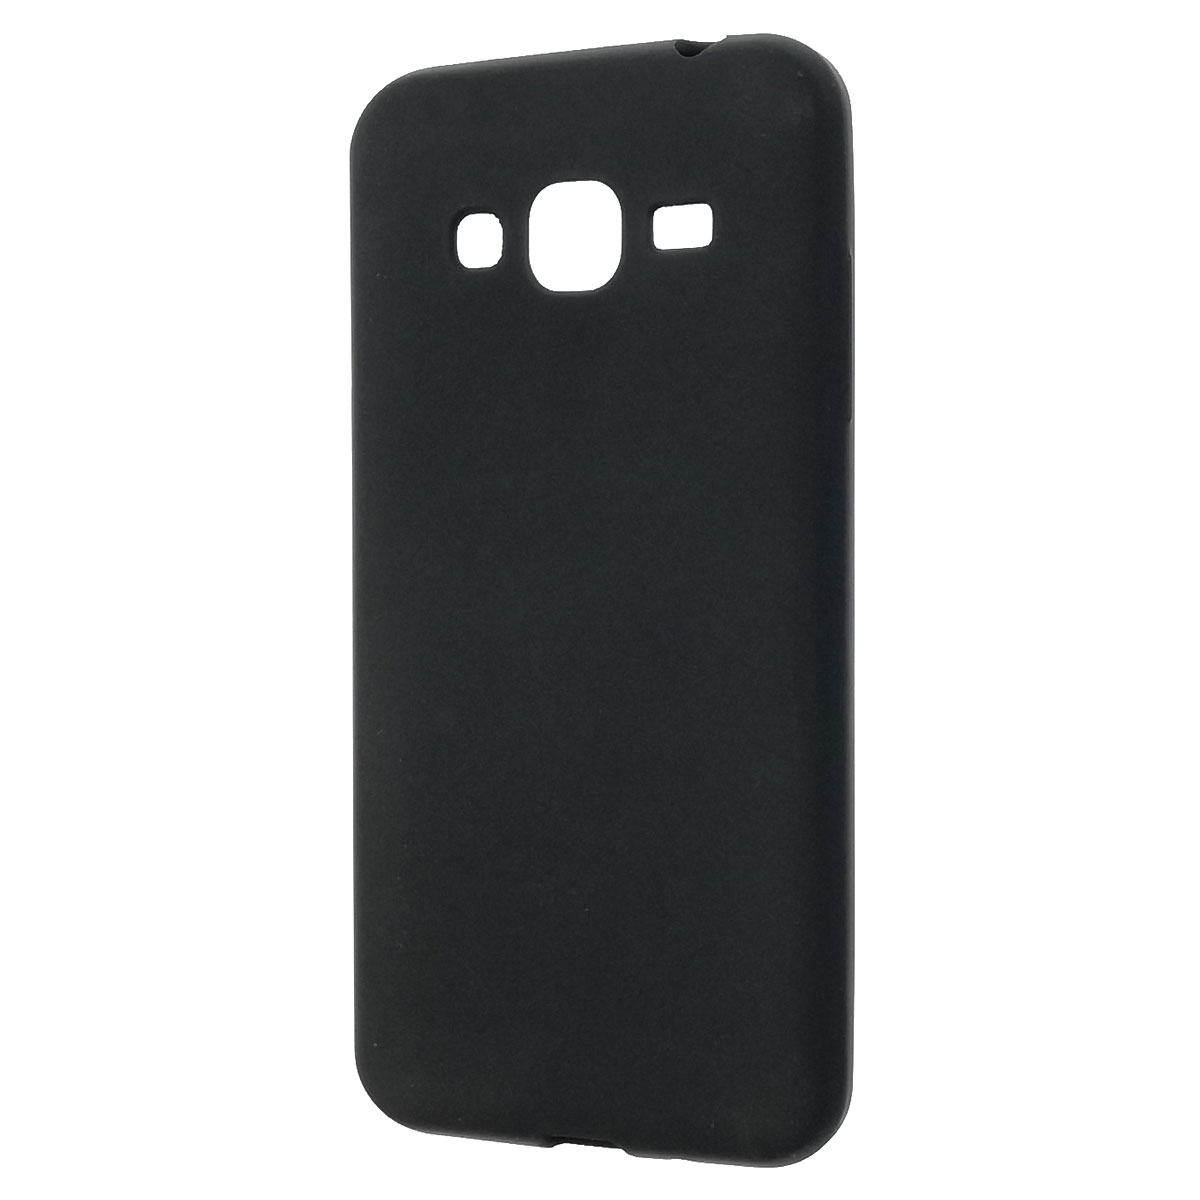 Чехол накладка Fashion для SAMSUNG Galaxy J2 Prime (SM-G532), силикон, цвет черный